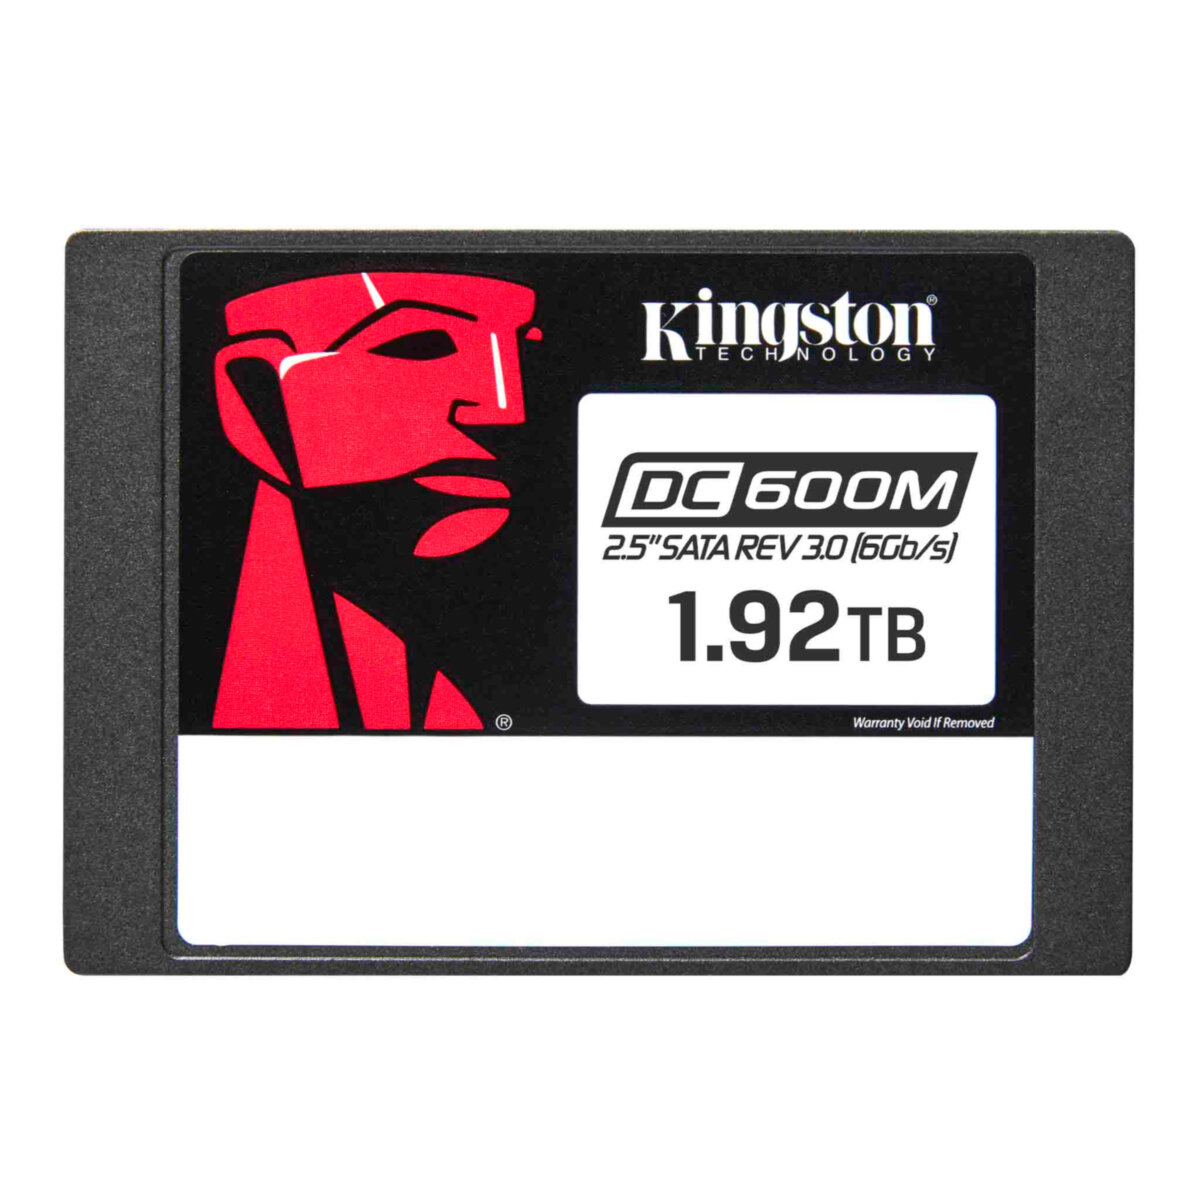 Dysk SSD Kingston DC600M 1.92TB widok frontu na białym tle